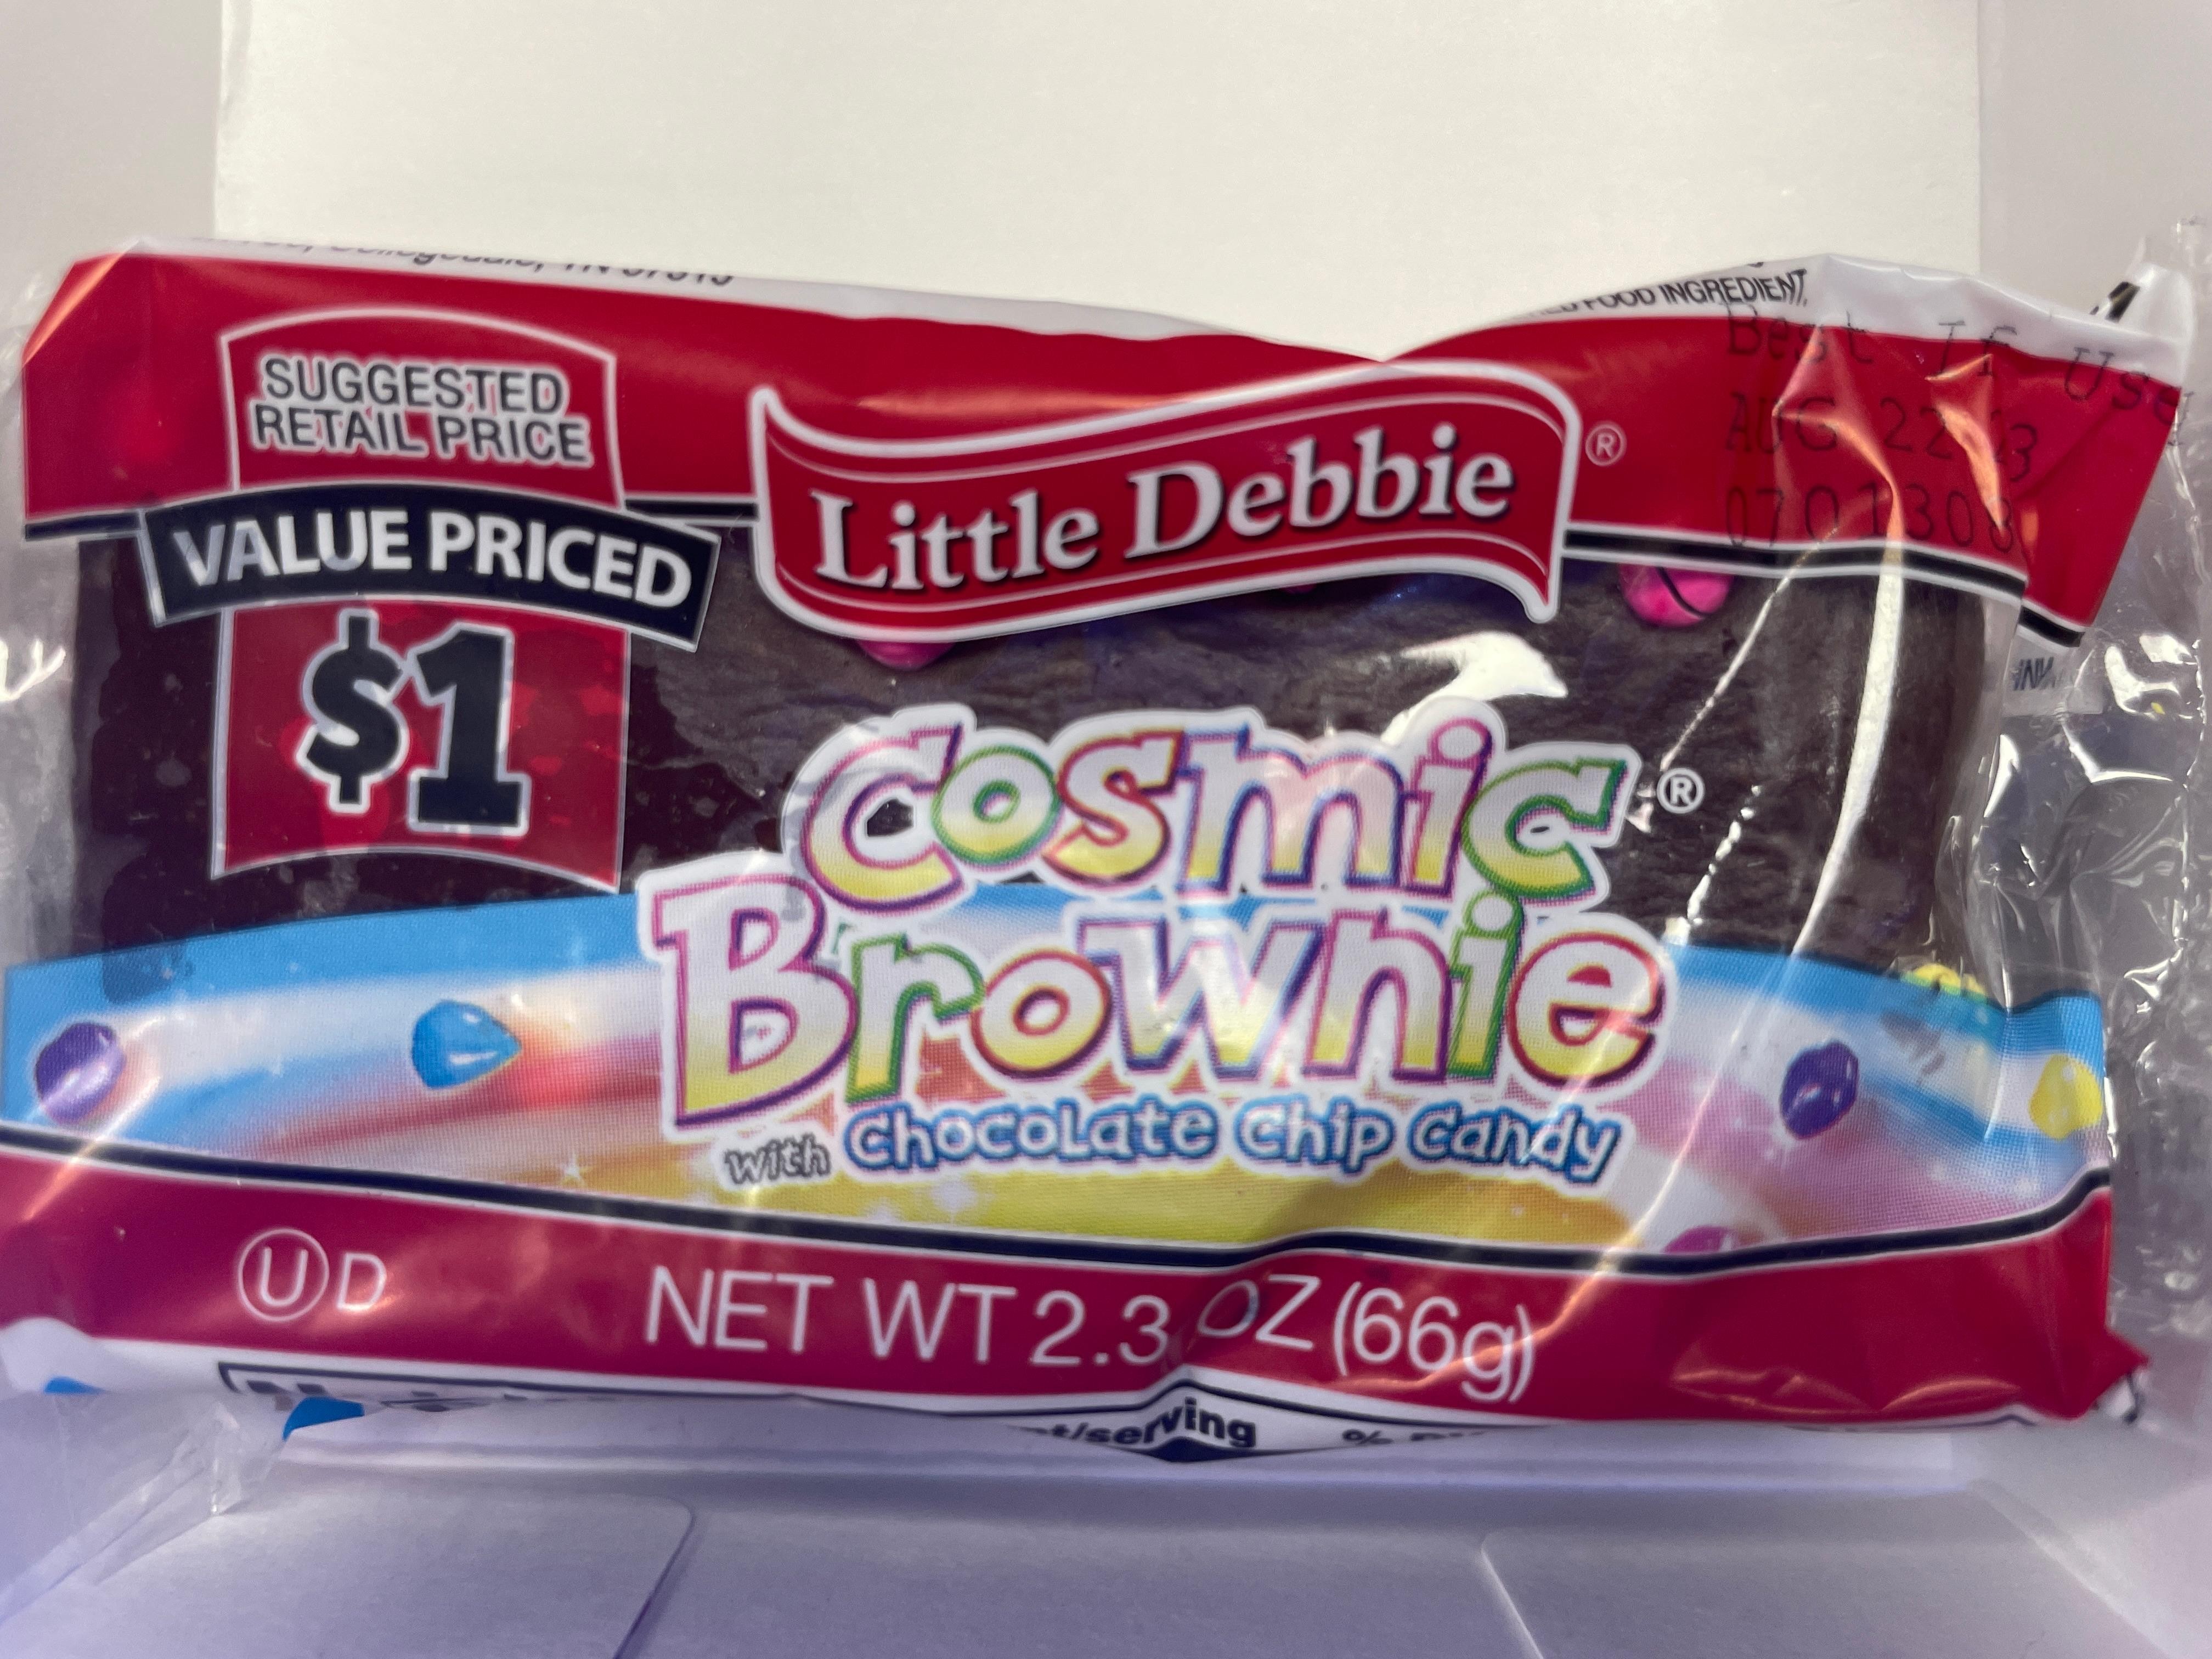 Cosmic brownie